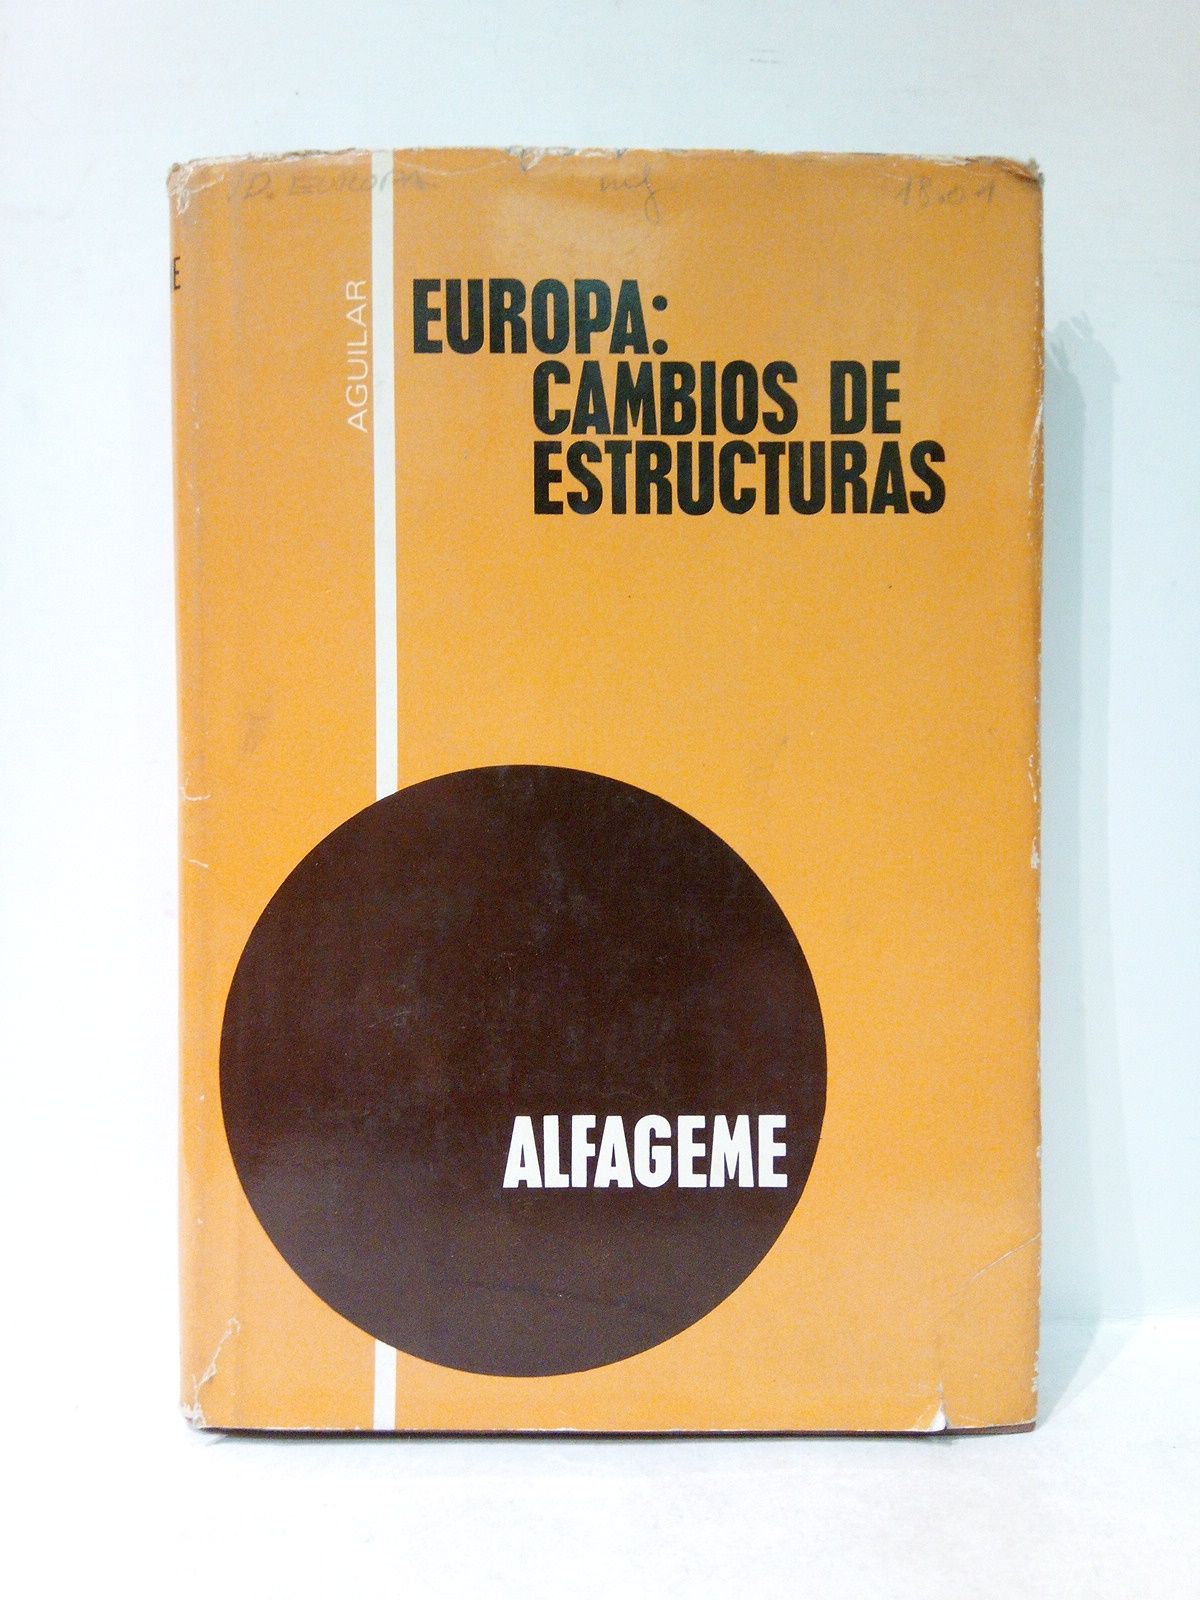 ALFAGEME, Braulio - Europa: Cambios de estructuras / Prol. de Luis Legaz y Lacambra